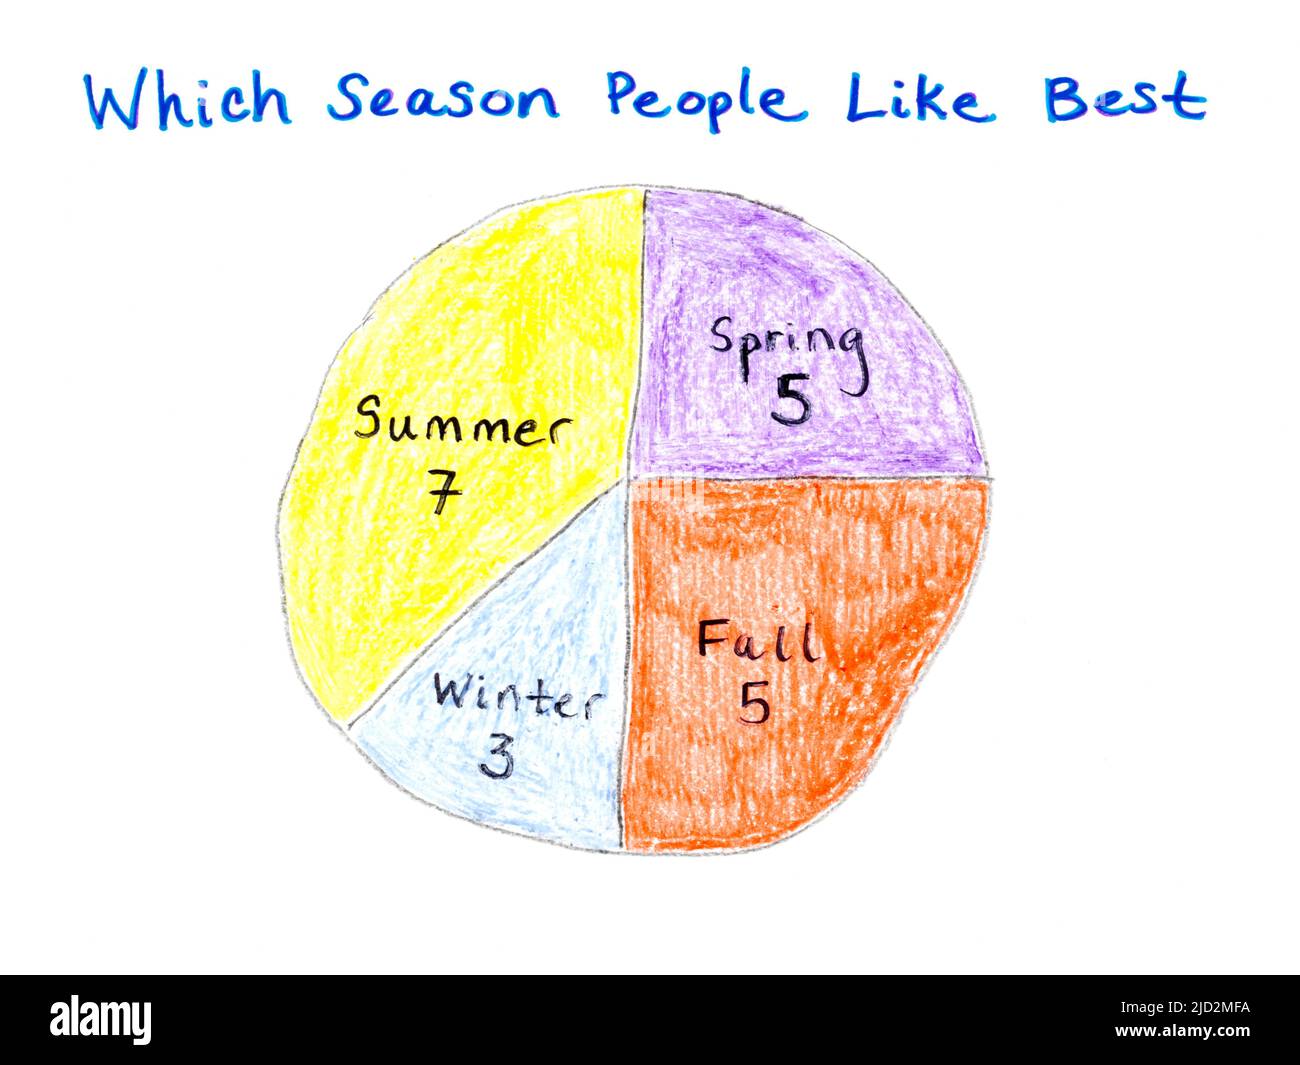 Ein farbliches Tortendiagramm oder Kreisdiagramm, das einen Datensatz der Lieblingssaison des Schülers anzeigt - Winter, Sommer, Frühling oder Herbst. Stockfoto